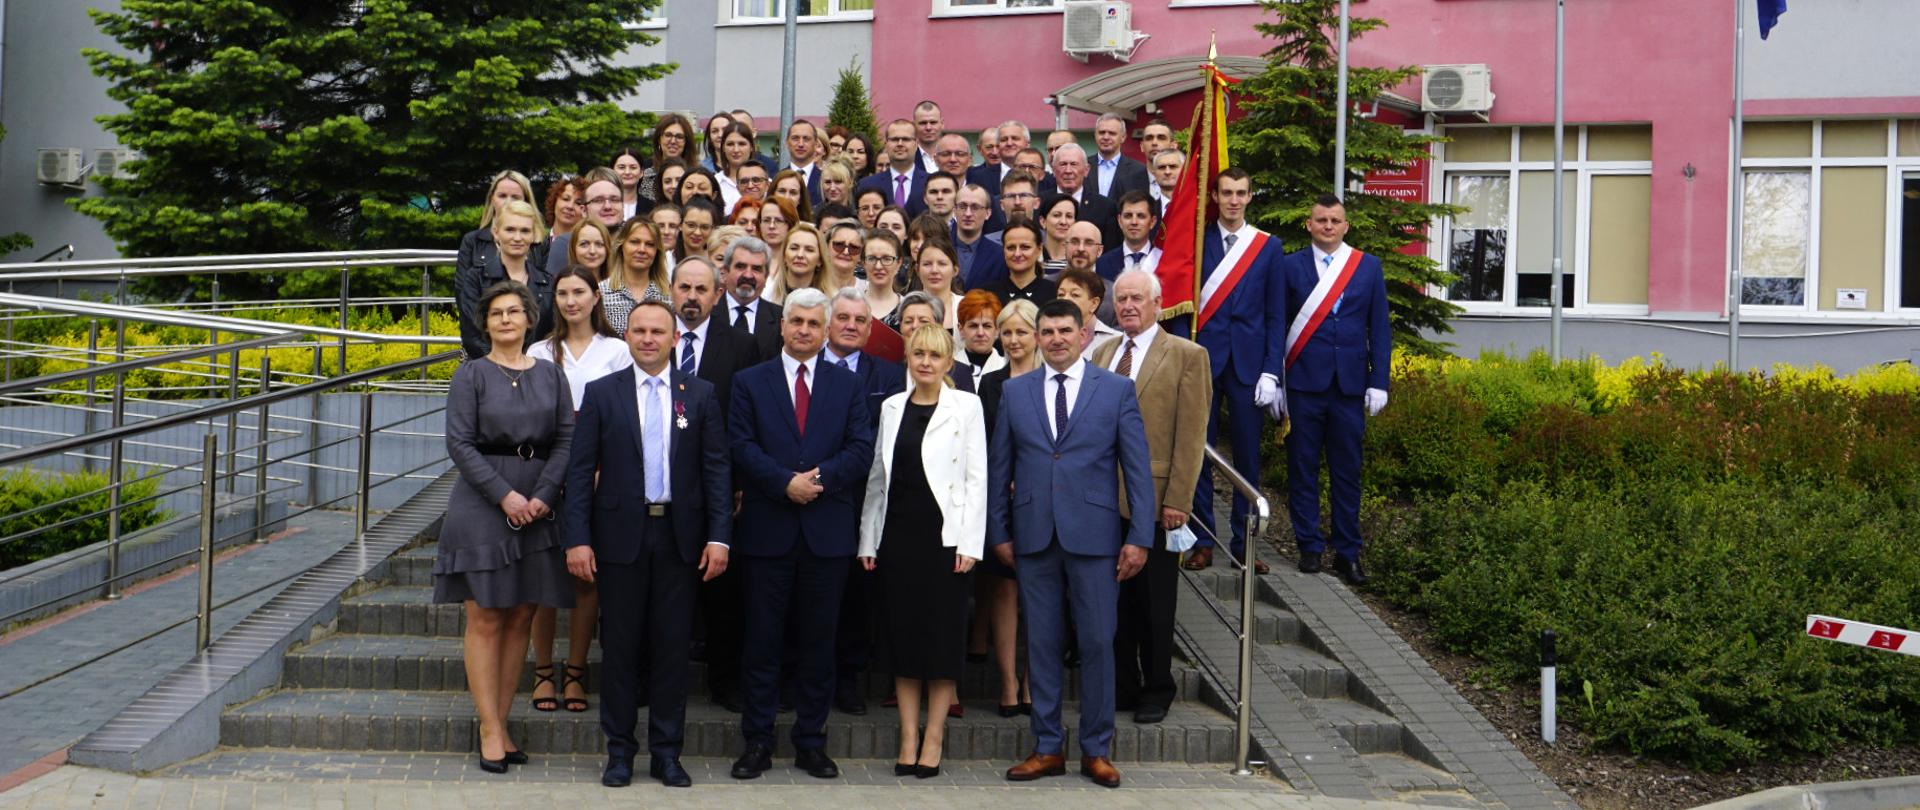 Dzień Samorządu Terytorialnego – sesja Rady Gminy Łomża